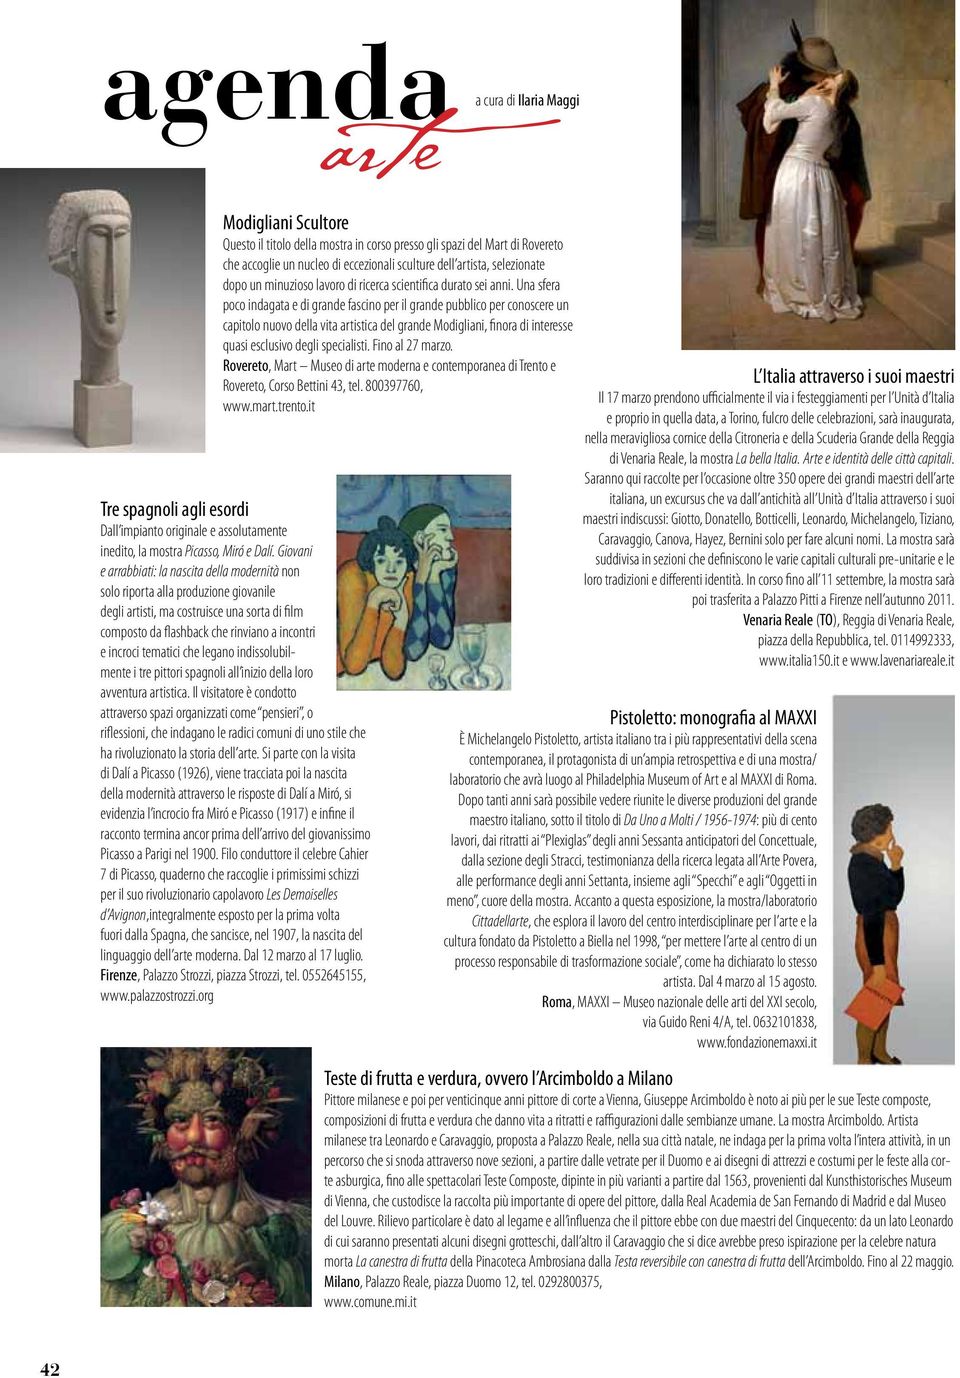 Una sfera poco indagata e di grande fascino per il grande pubblico per conoscere un capitolo nuovo della vita artistica del grande Modigliani, finora di interesse quasi esclusivo degli specialisti.